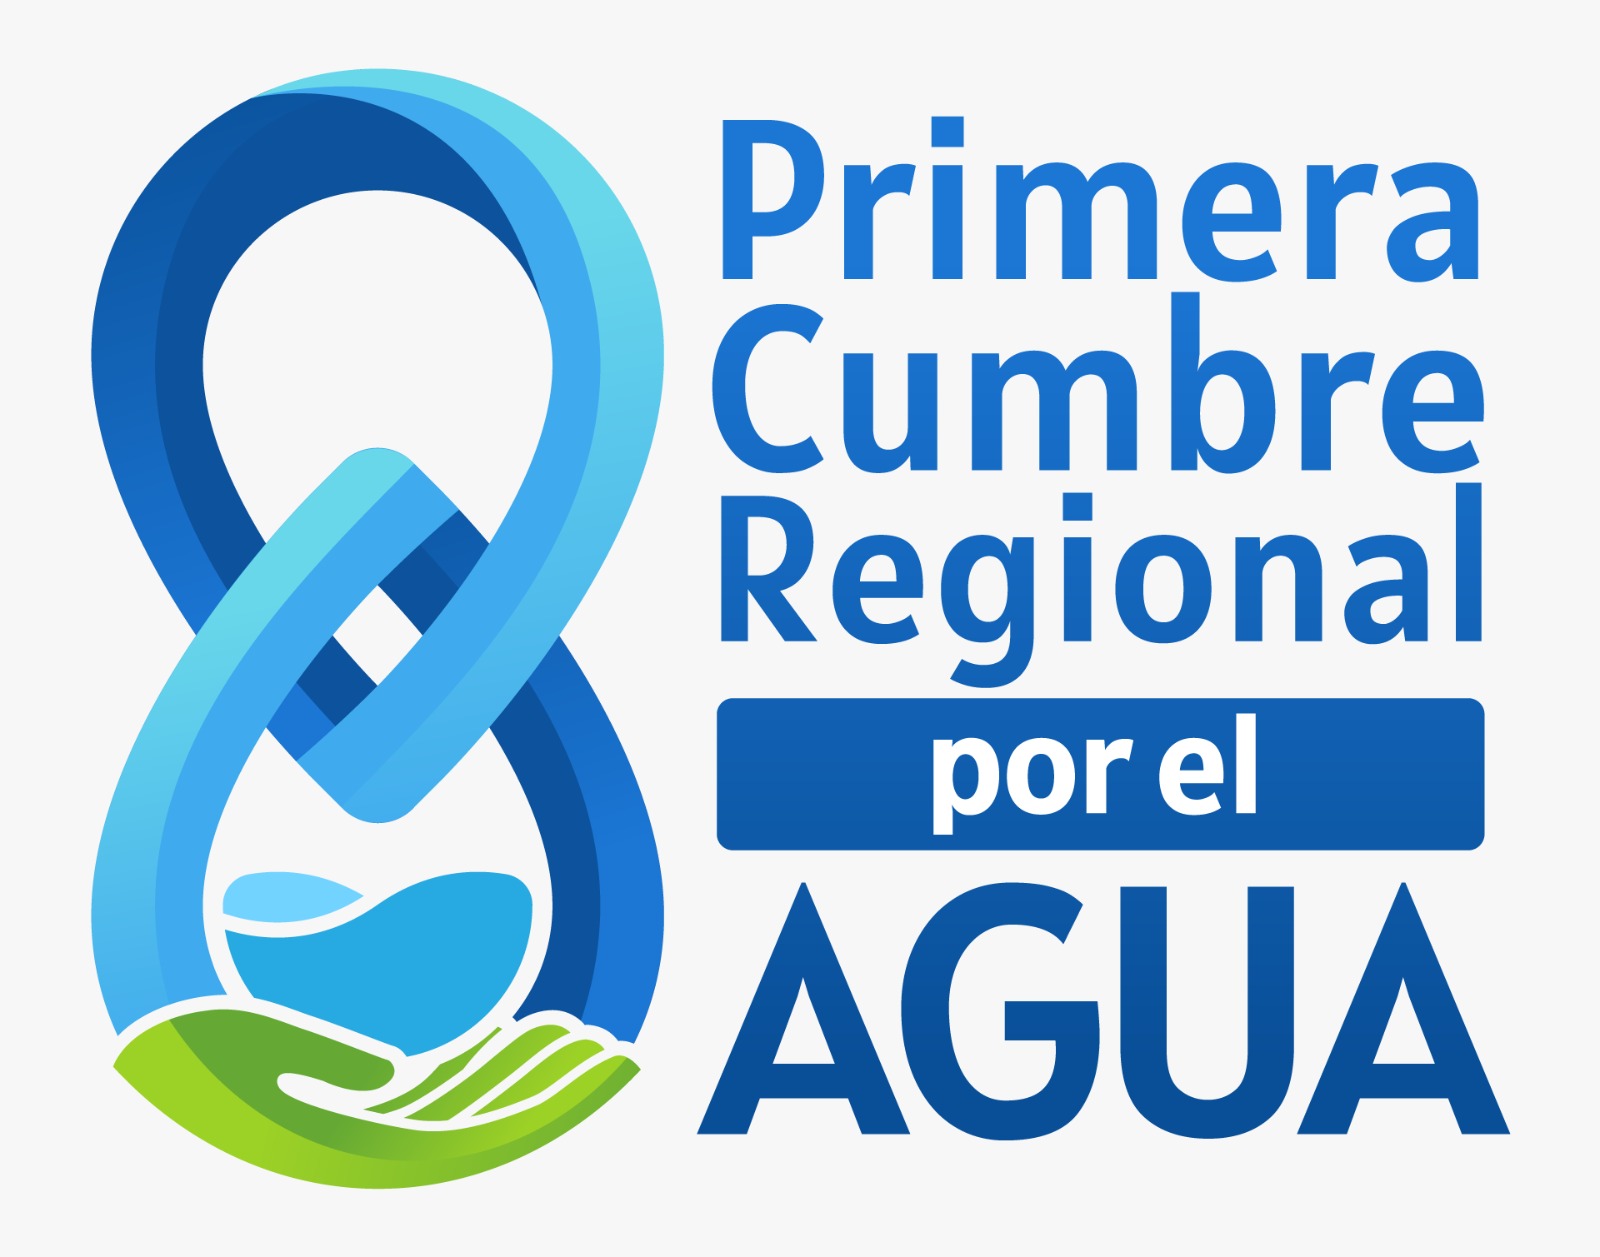 Primera Cumbre Regional por el Agua buscará acuerdo para el nororiente de Colombia